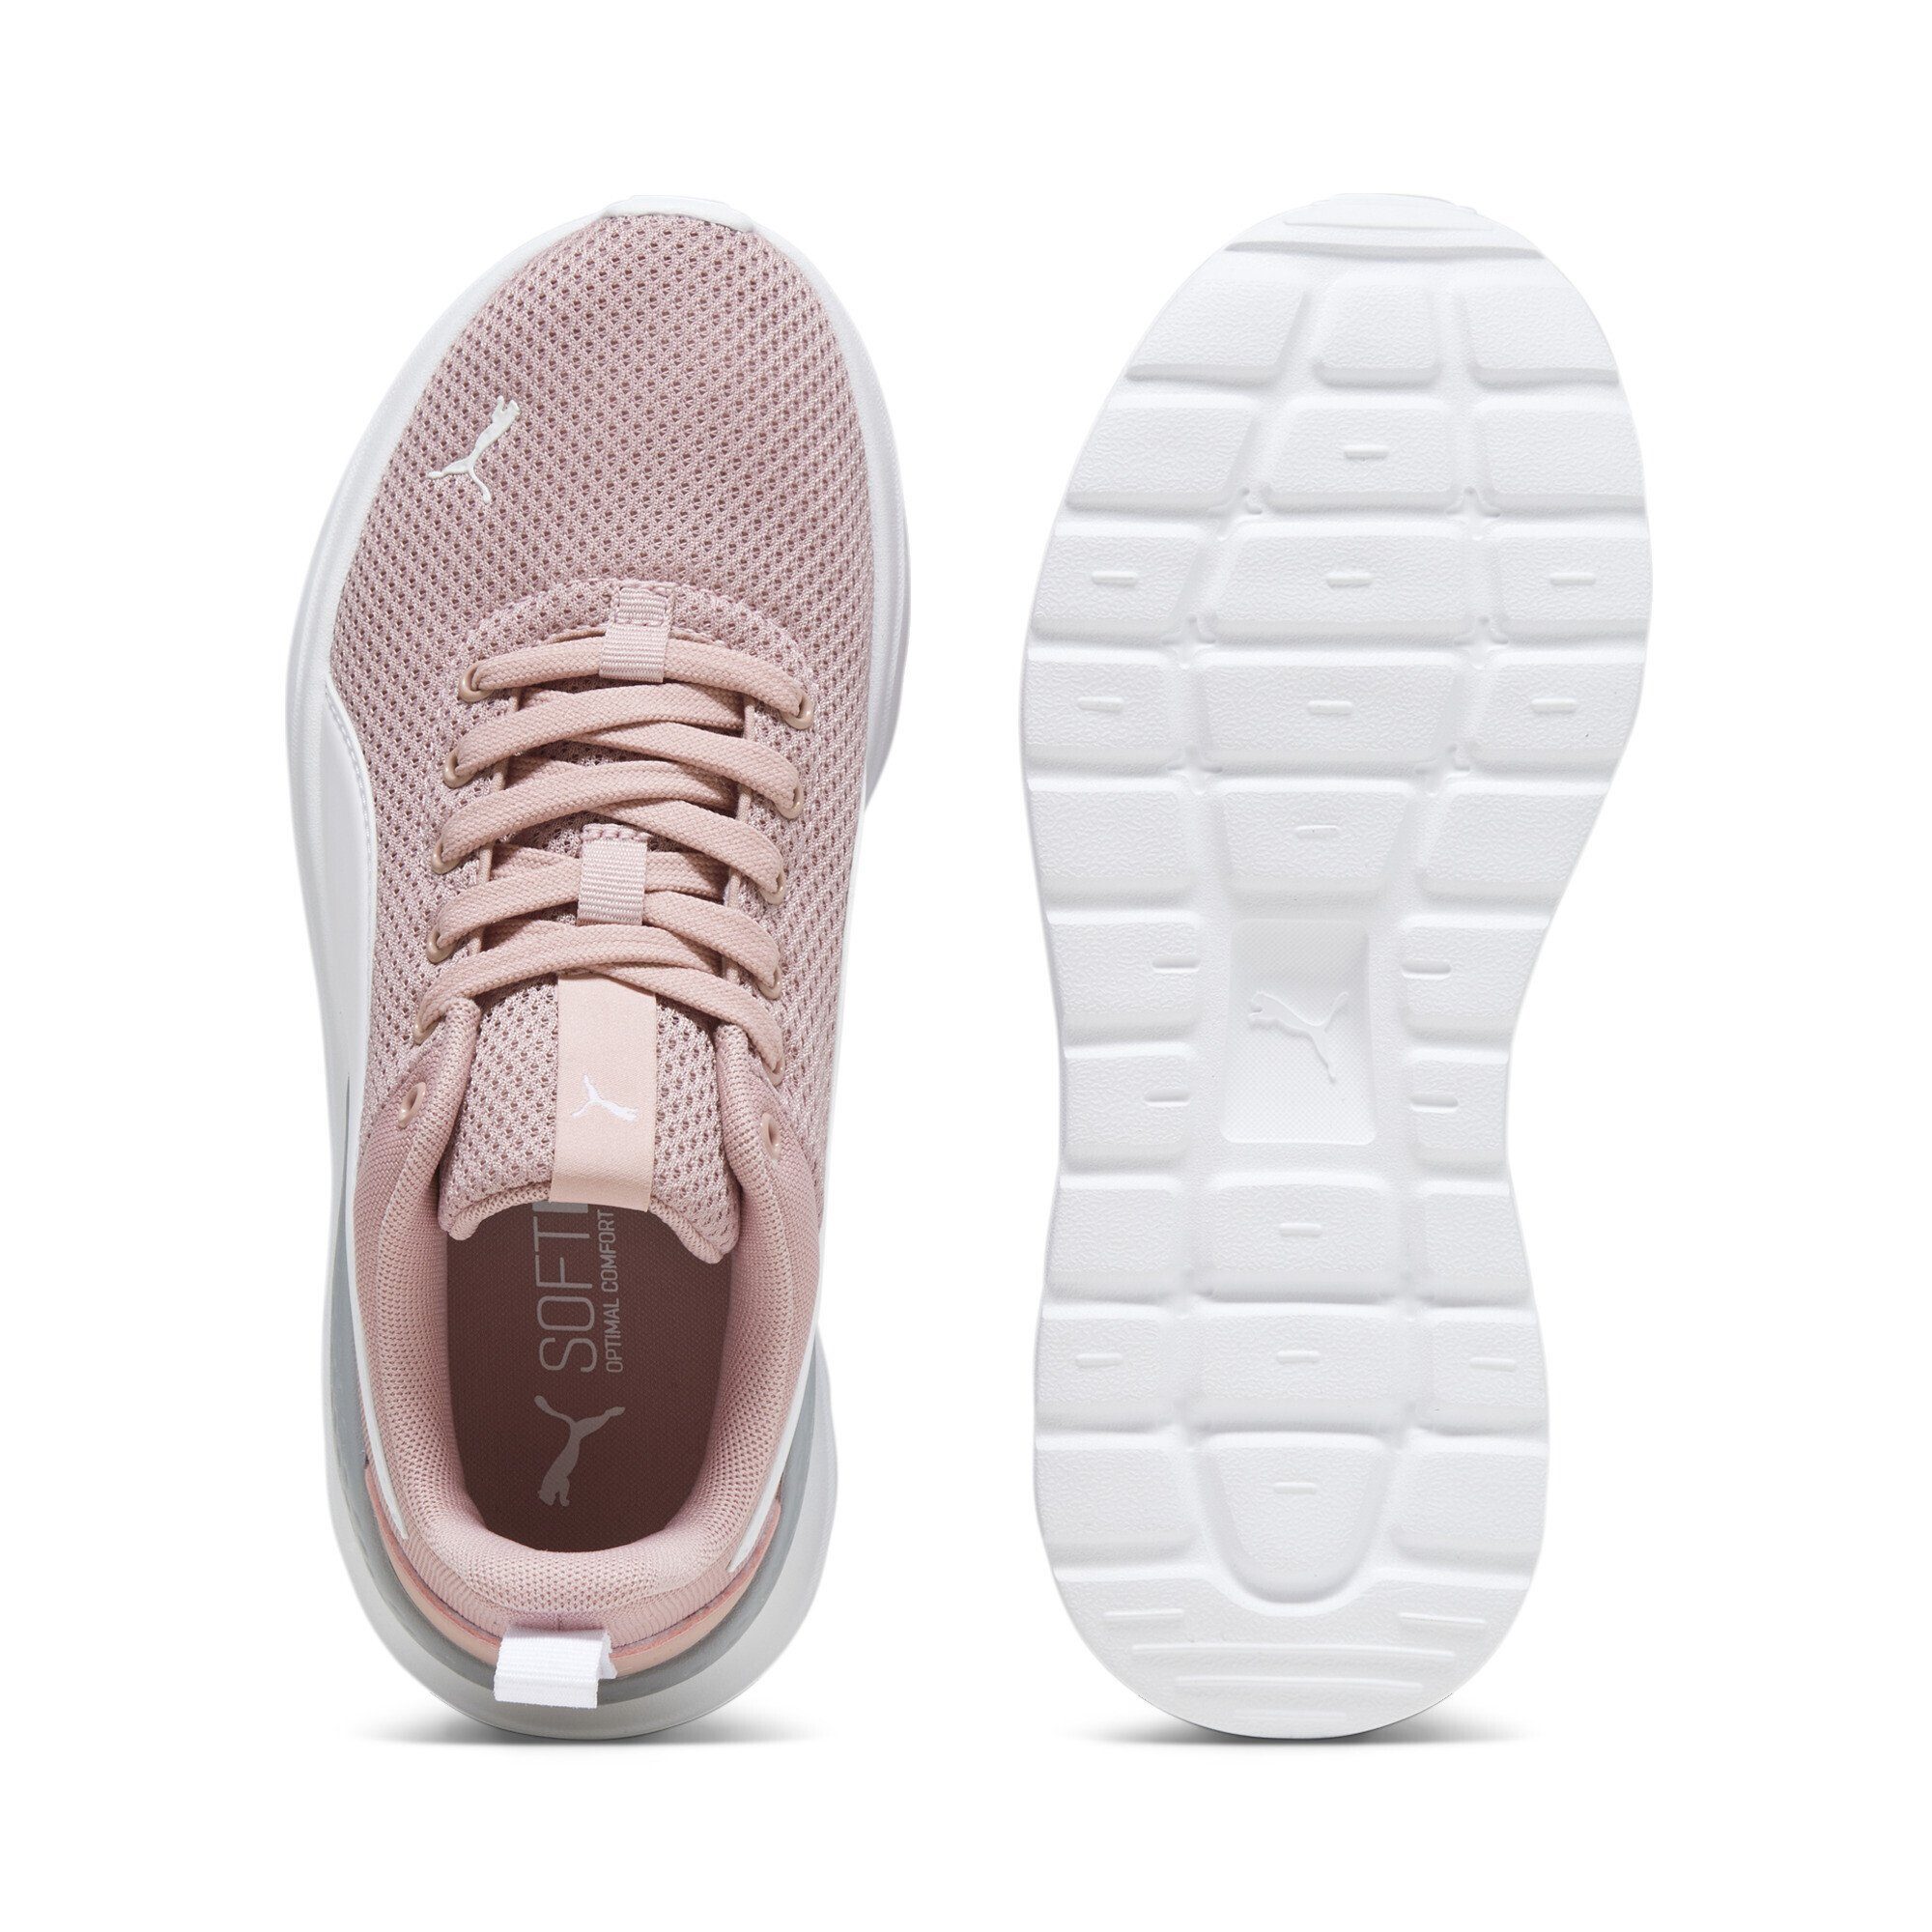 PUMA Anzarun Lite Peach Smoothie White Pink Jugendliche Sneakers Laufschuh